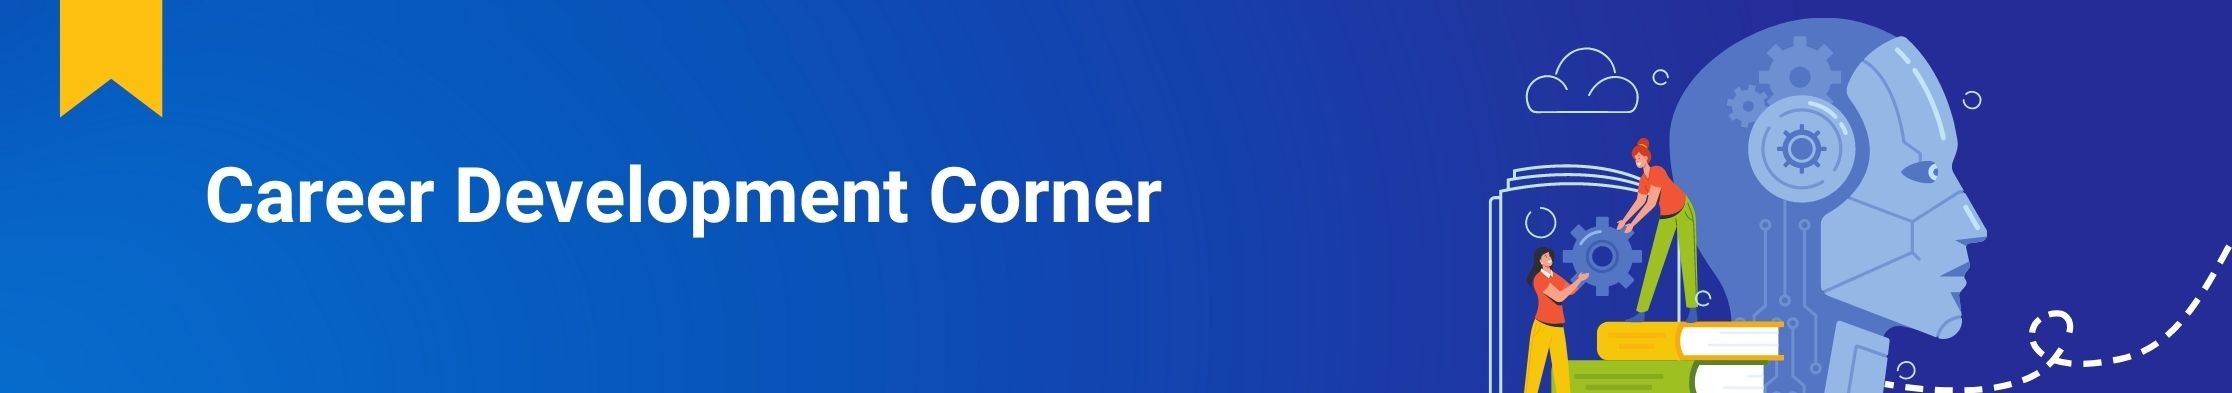 Career_Development_Corner_Newsletter_Part